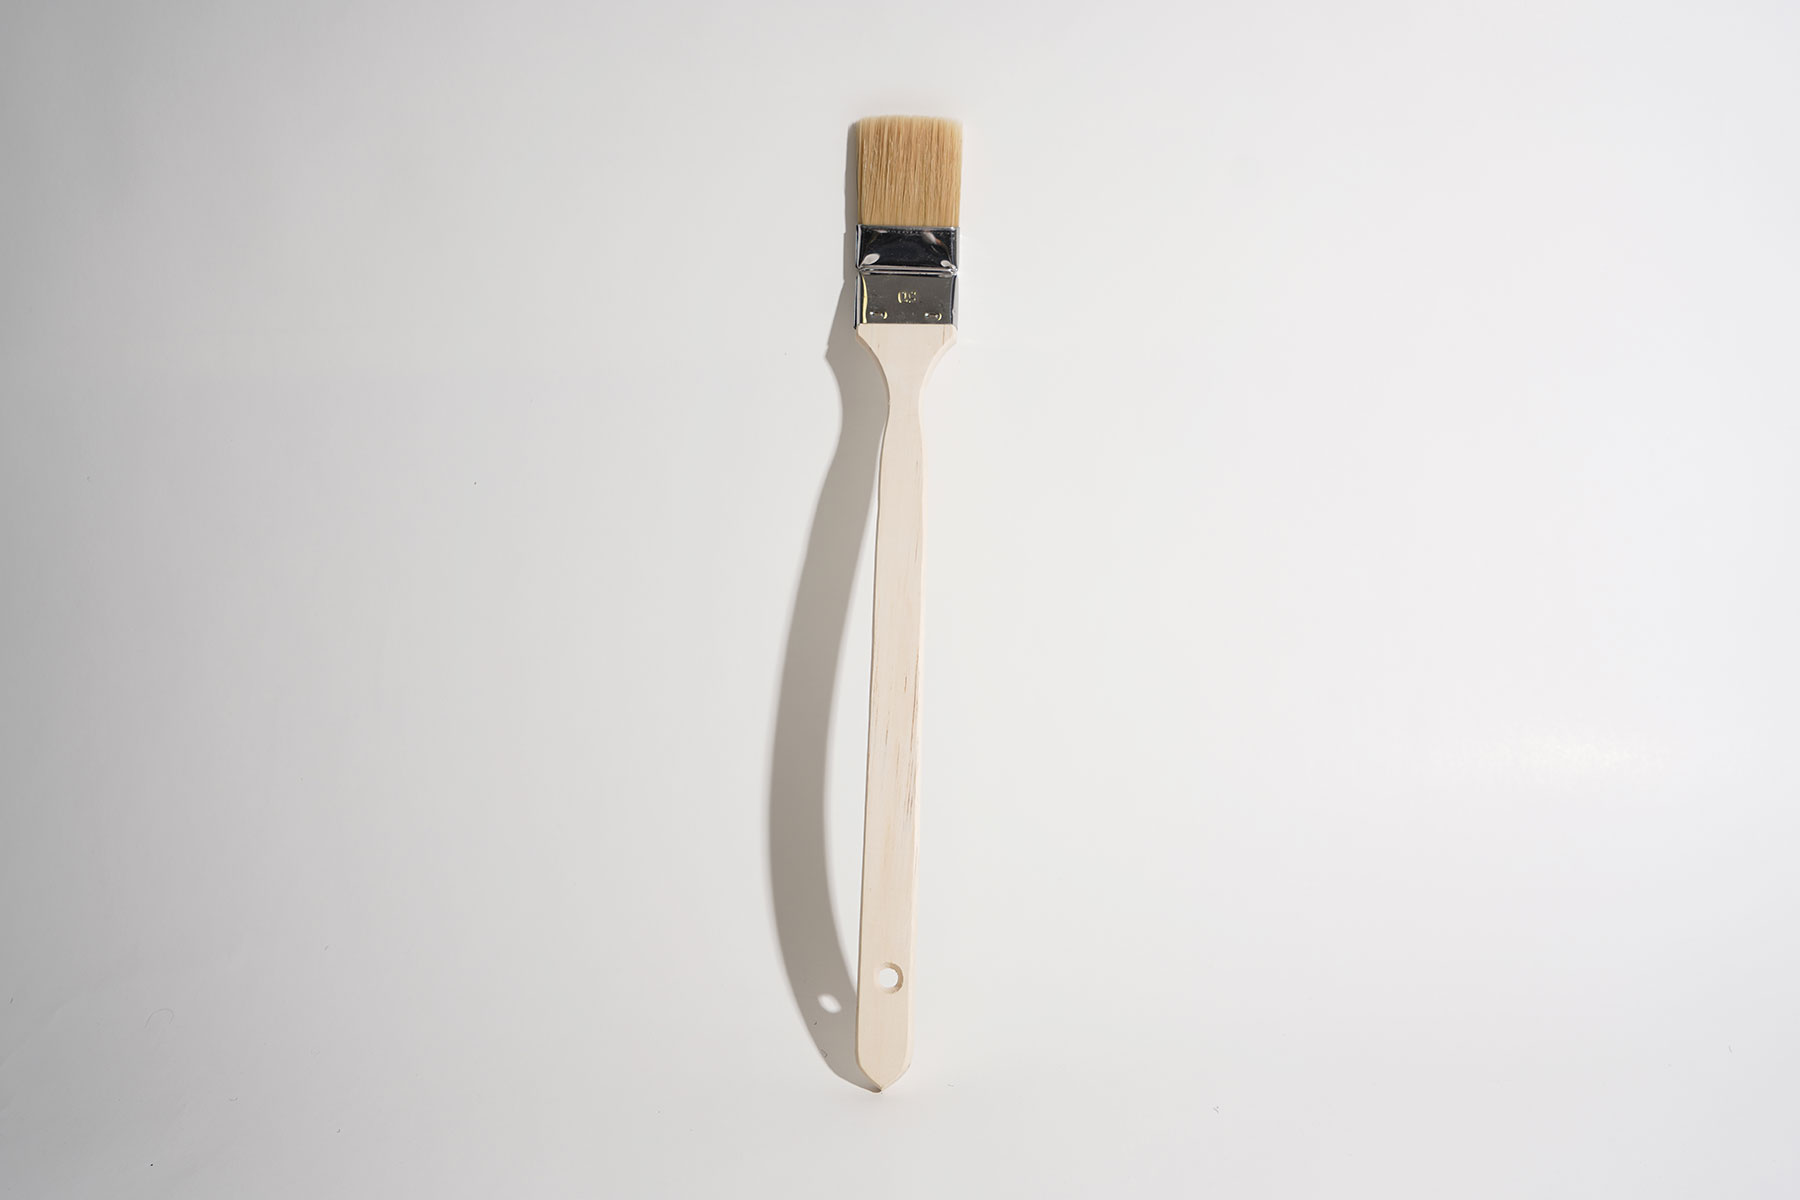             Pennello angolare 5cm, manico lungo in legno per lavori di pittura
        